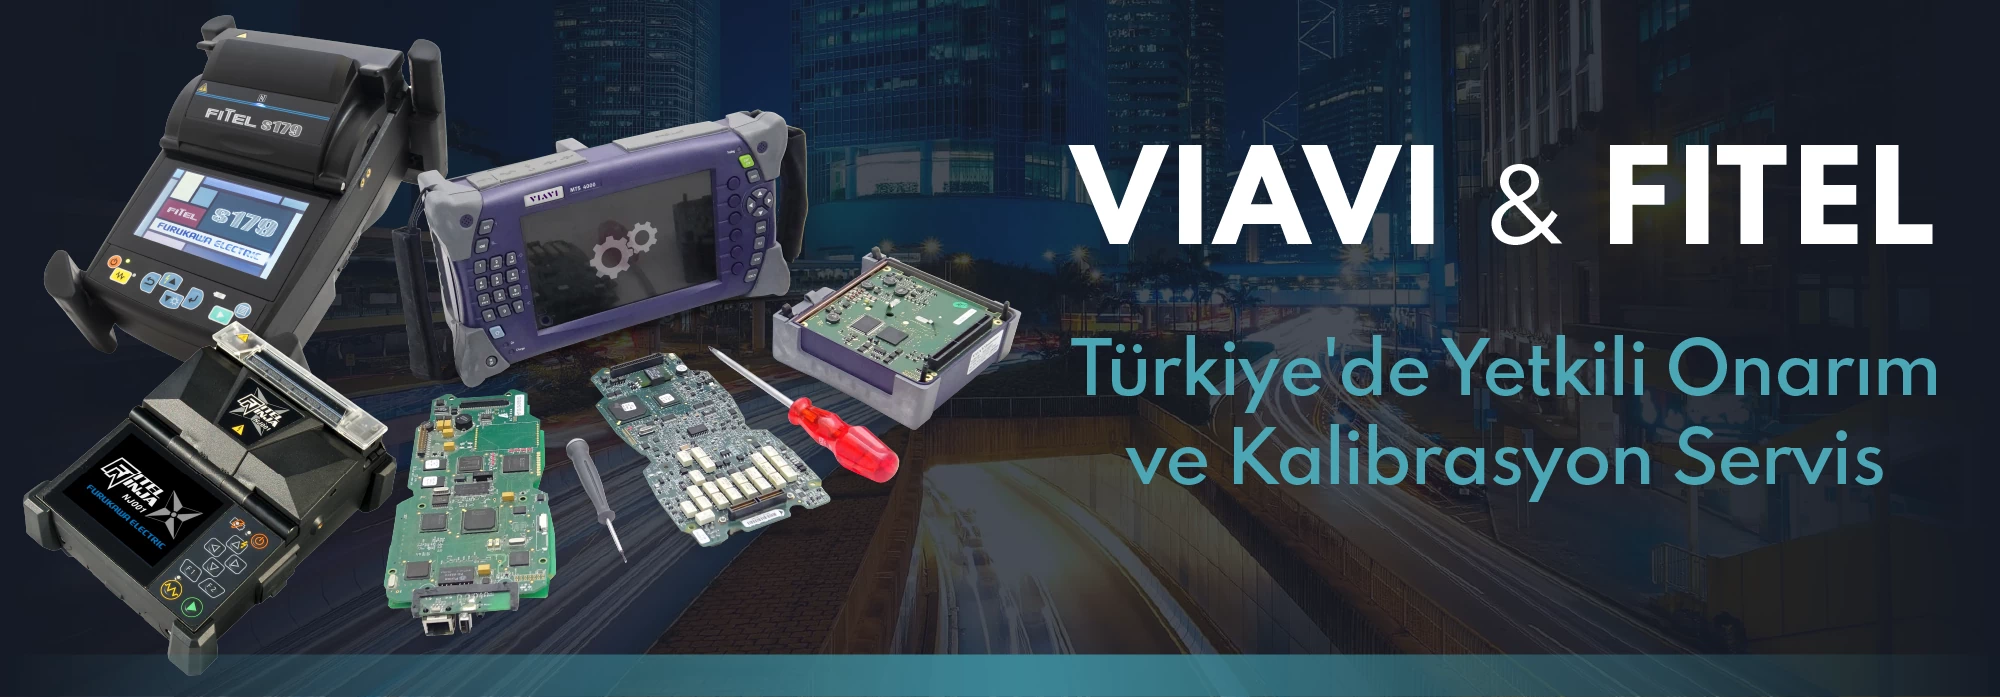 VIAVI & FITEL Türkiye'de Tamir ve Kalibrasyon Servis